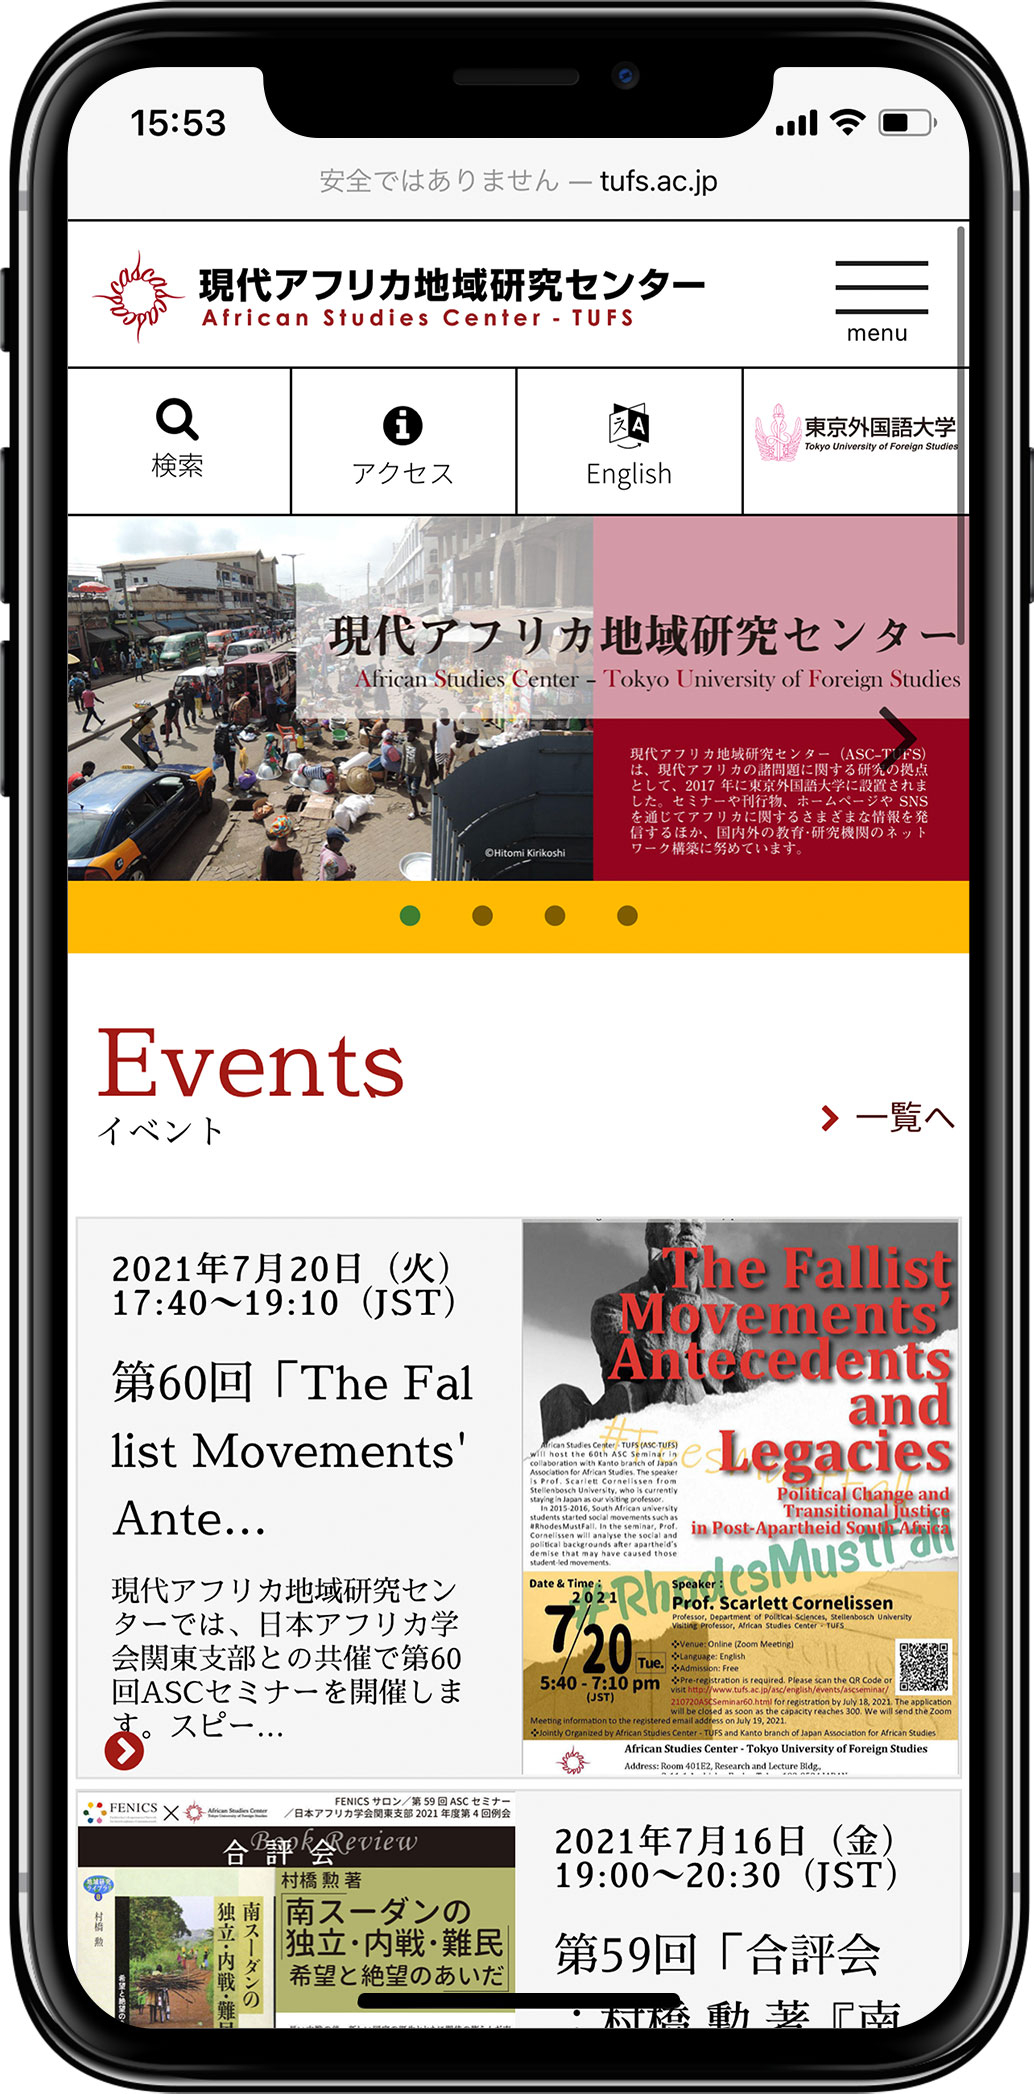 東京外国語大学「現代アフリカ地域研究センター」様ウェブサイトをリニューアルしましたスマートフォンの見た目